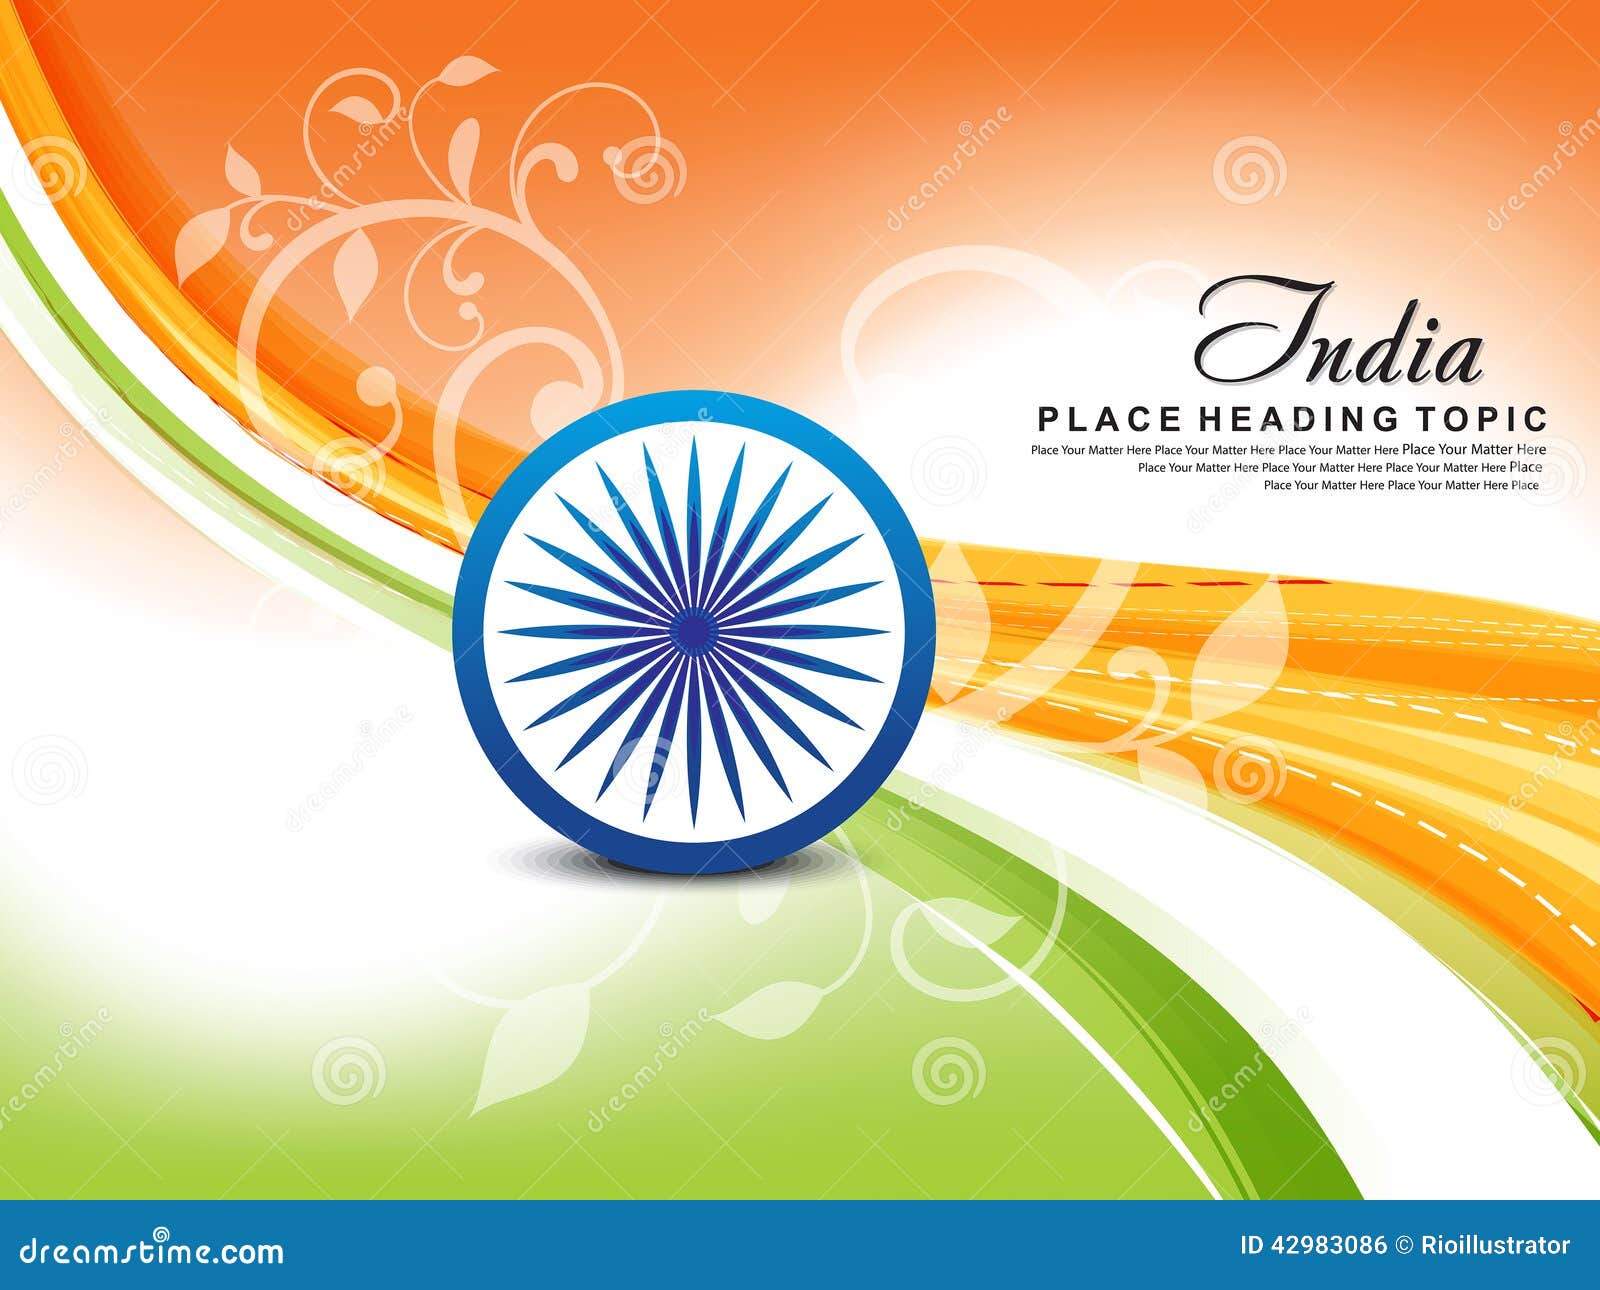 Với thiết kế vector độc đáo, nền tảng ngày độc lập Ấn Độ ngày 15 tháng 8 sẽ làm cho bạn không thể rời mắt! Tập trung vào những họa tiết và màu sắc truyền thống của quốc gia, nền tảng này sẽ giúp bạn kỷ niệm một cách đầy ý nghĩa. 